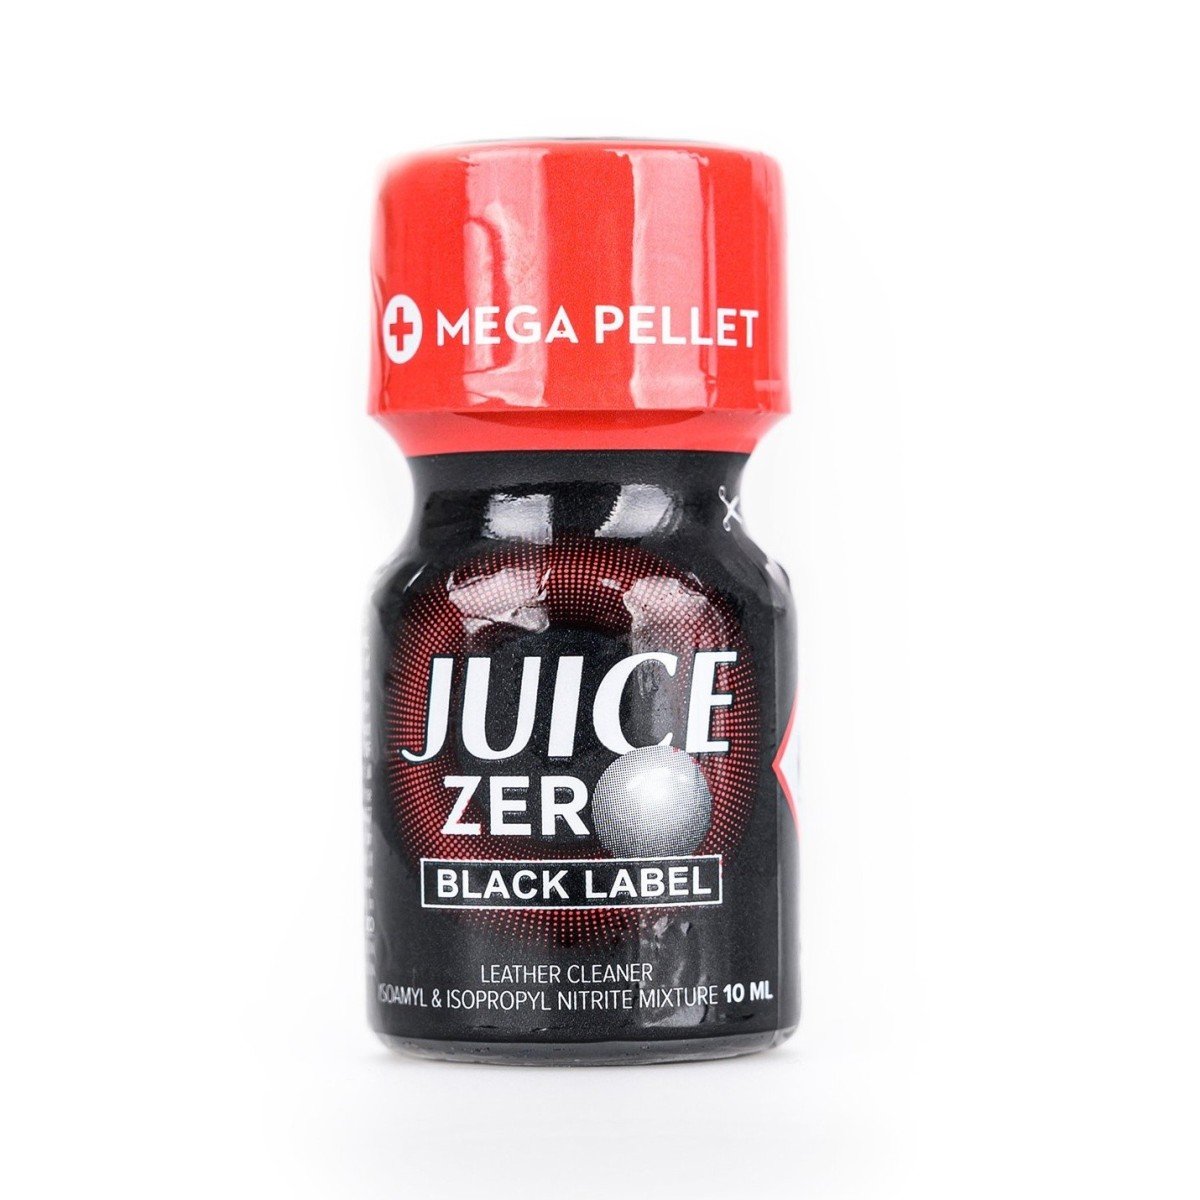 Juice Zero Black Label 10 ml